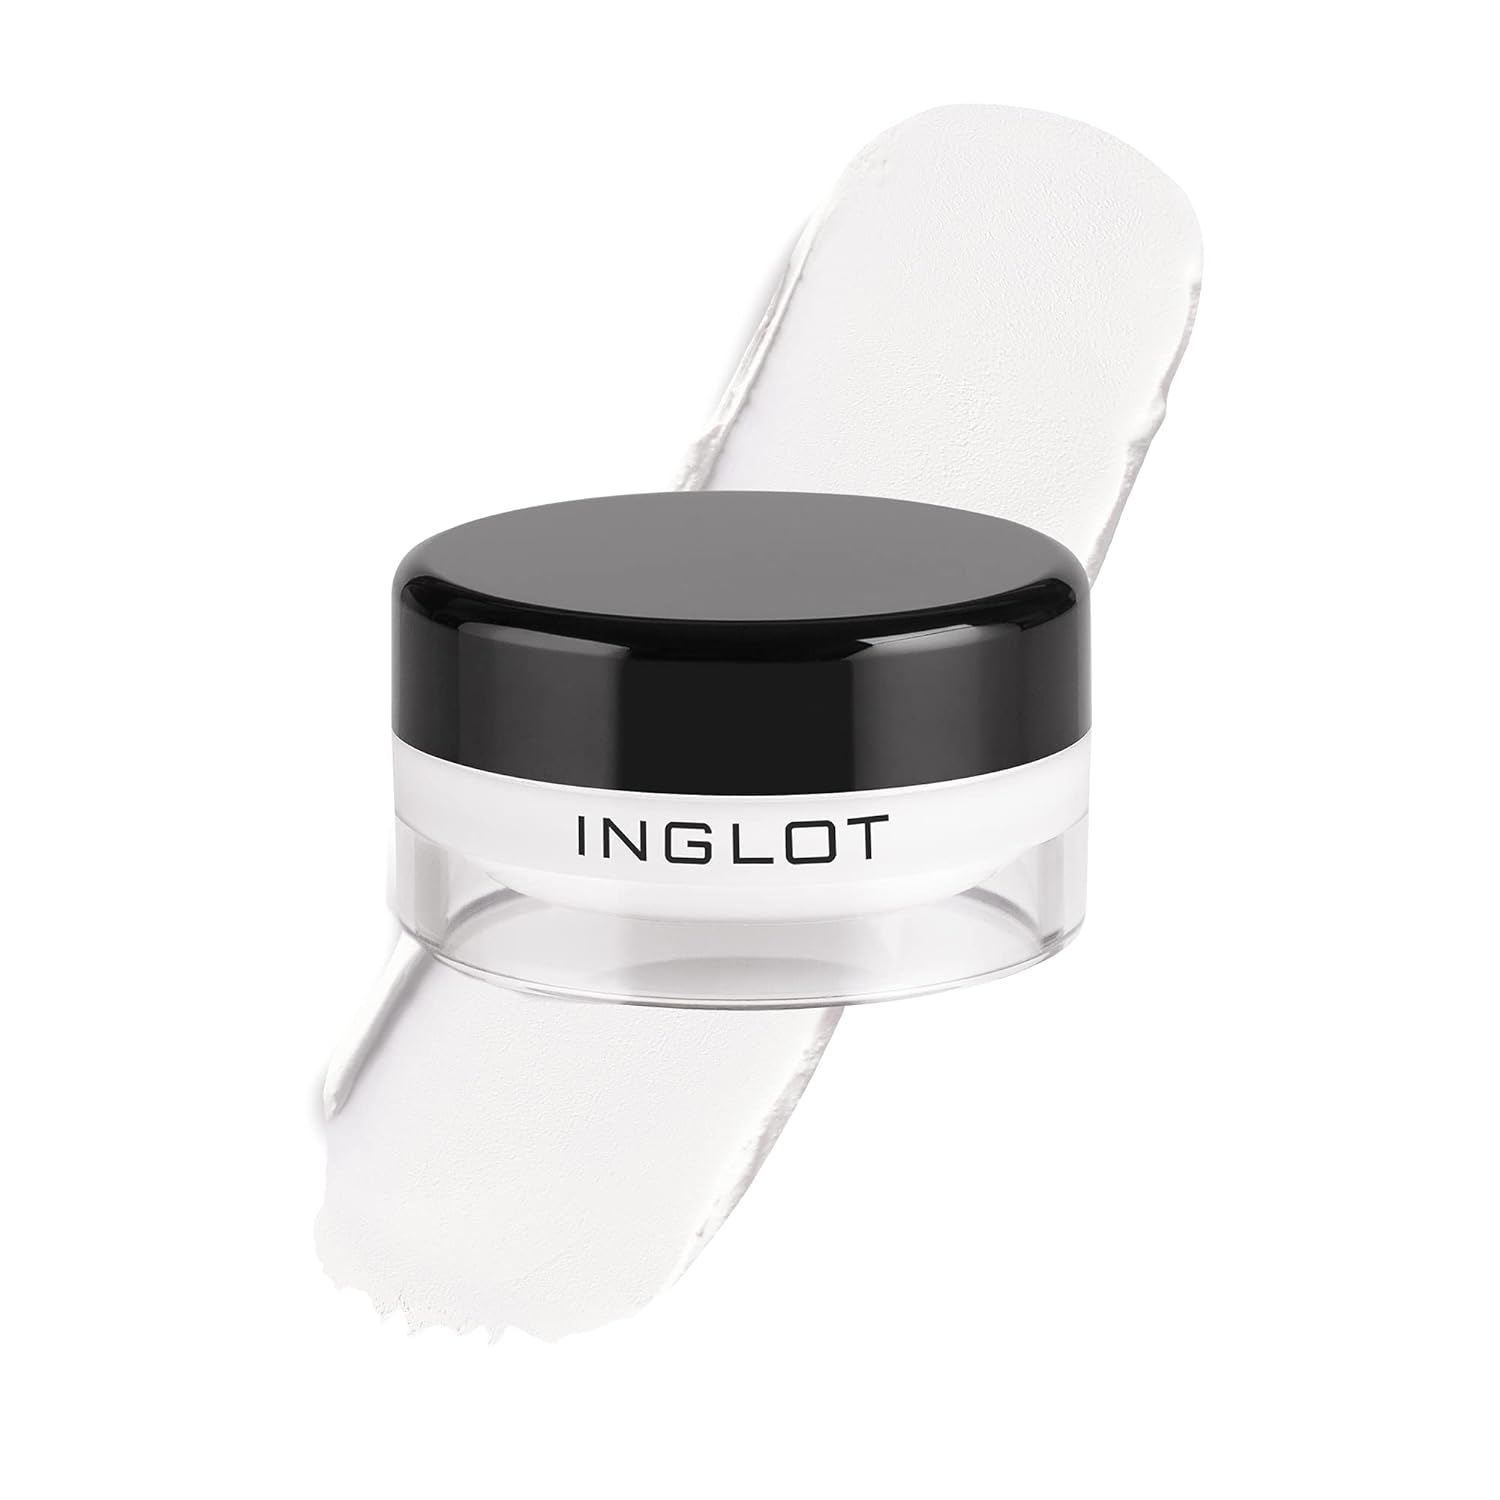 Inglot AMC EYELINER GEL 76 | Gel Eyeliner Matte | Waterproof | High Intensity Pigments | Eye Makeup | Creamy texture 5.5 g/0.19 US